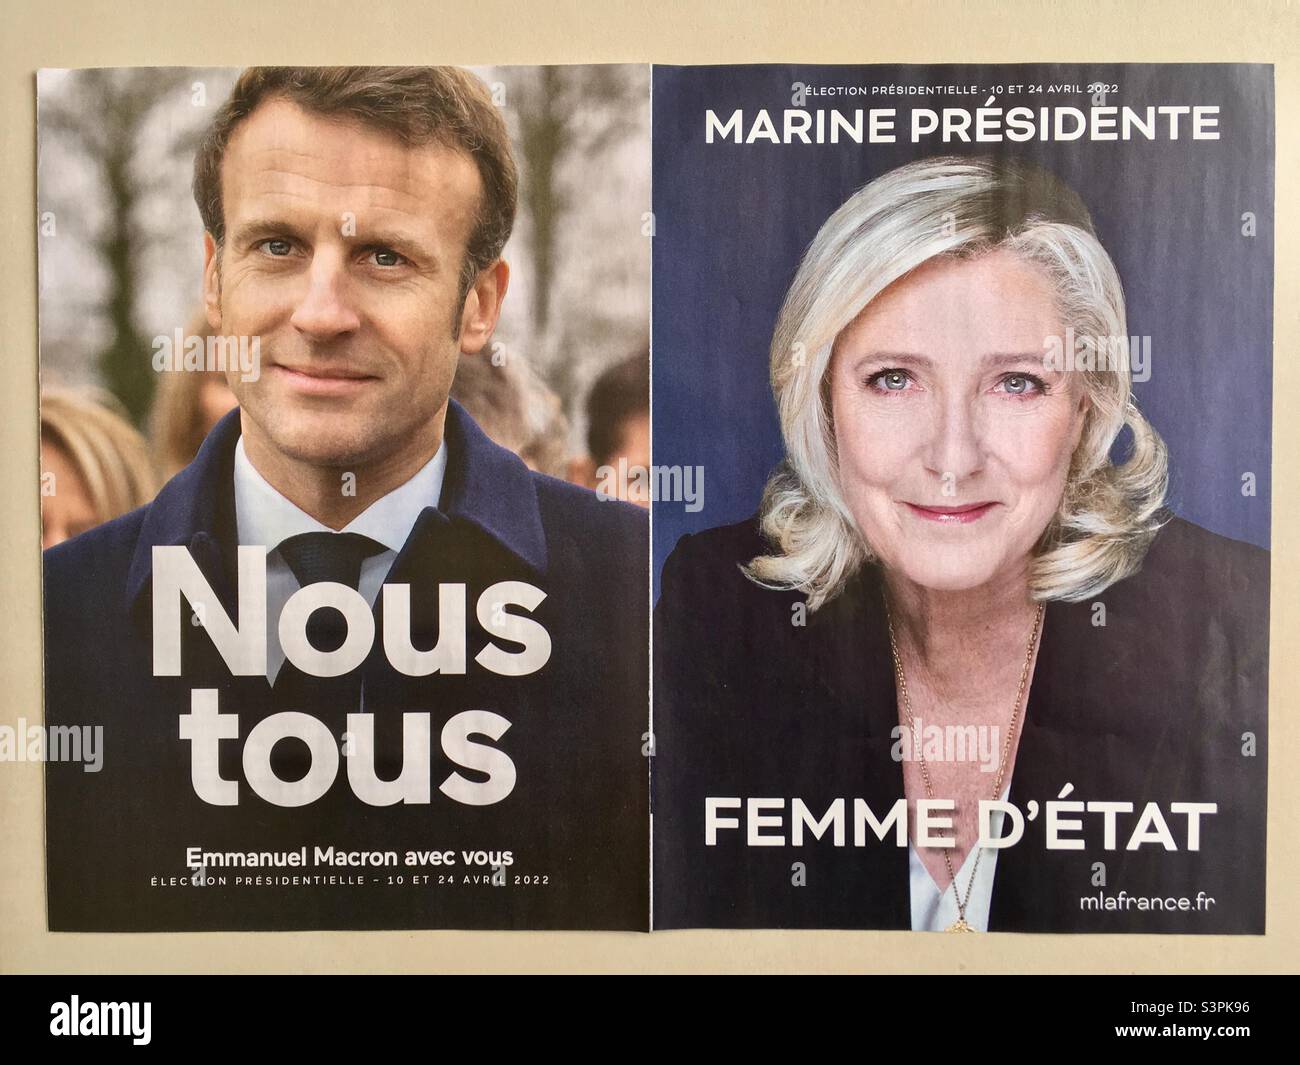 Emmanuel Macron et Marine le Pen aux élections présidentielles de 2022, le choix des franais au Premier tour devourt choisir lequel des deux pour gouverner les 5 prochaines années Foto Stock